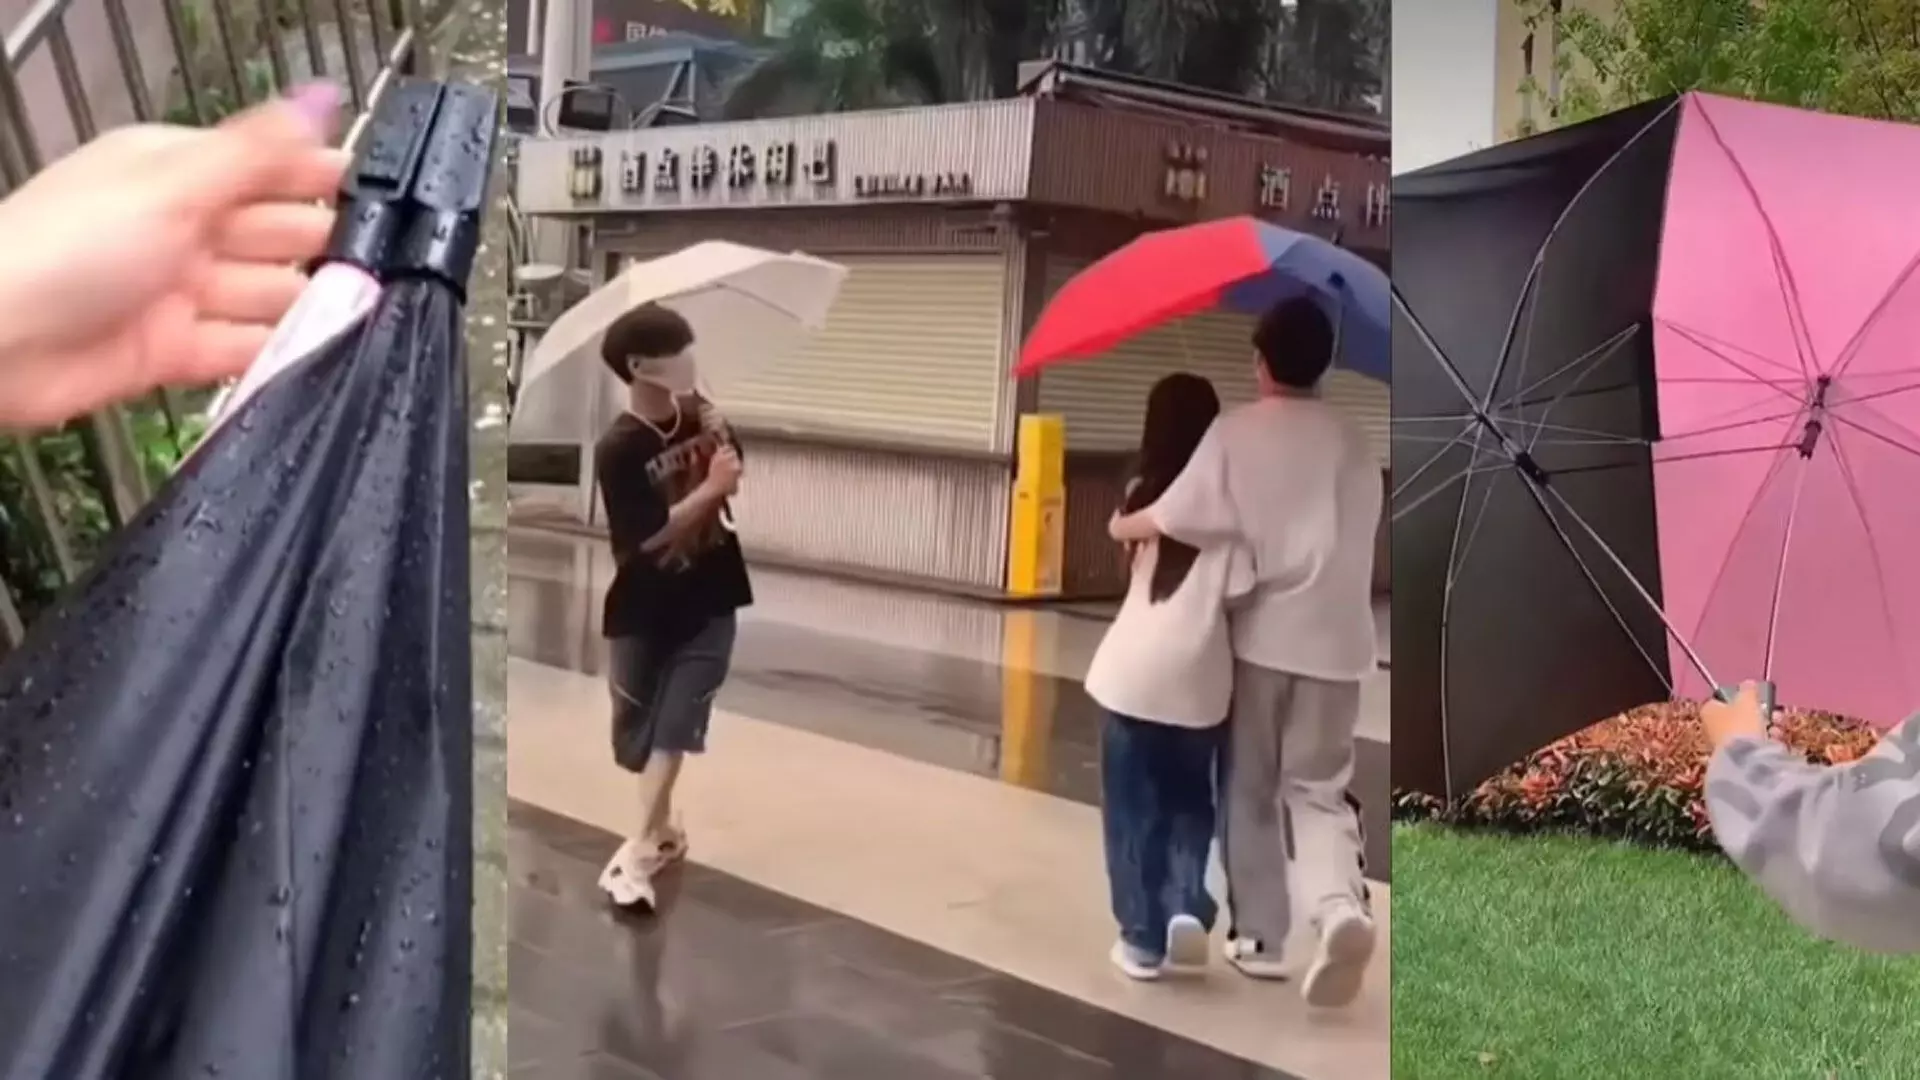 Couple छाते का वीडियो वायरल, लोगों ने दी प्रतिक्रया